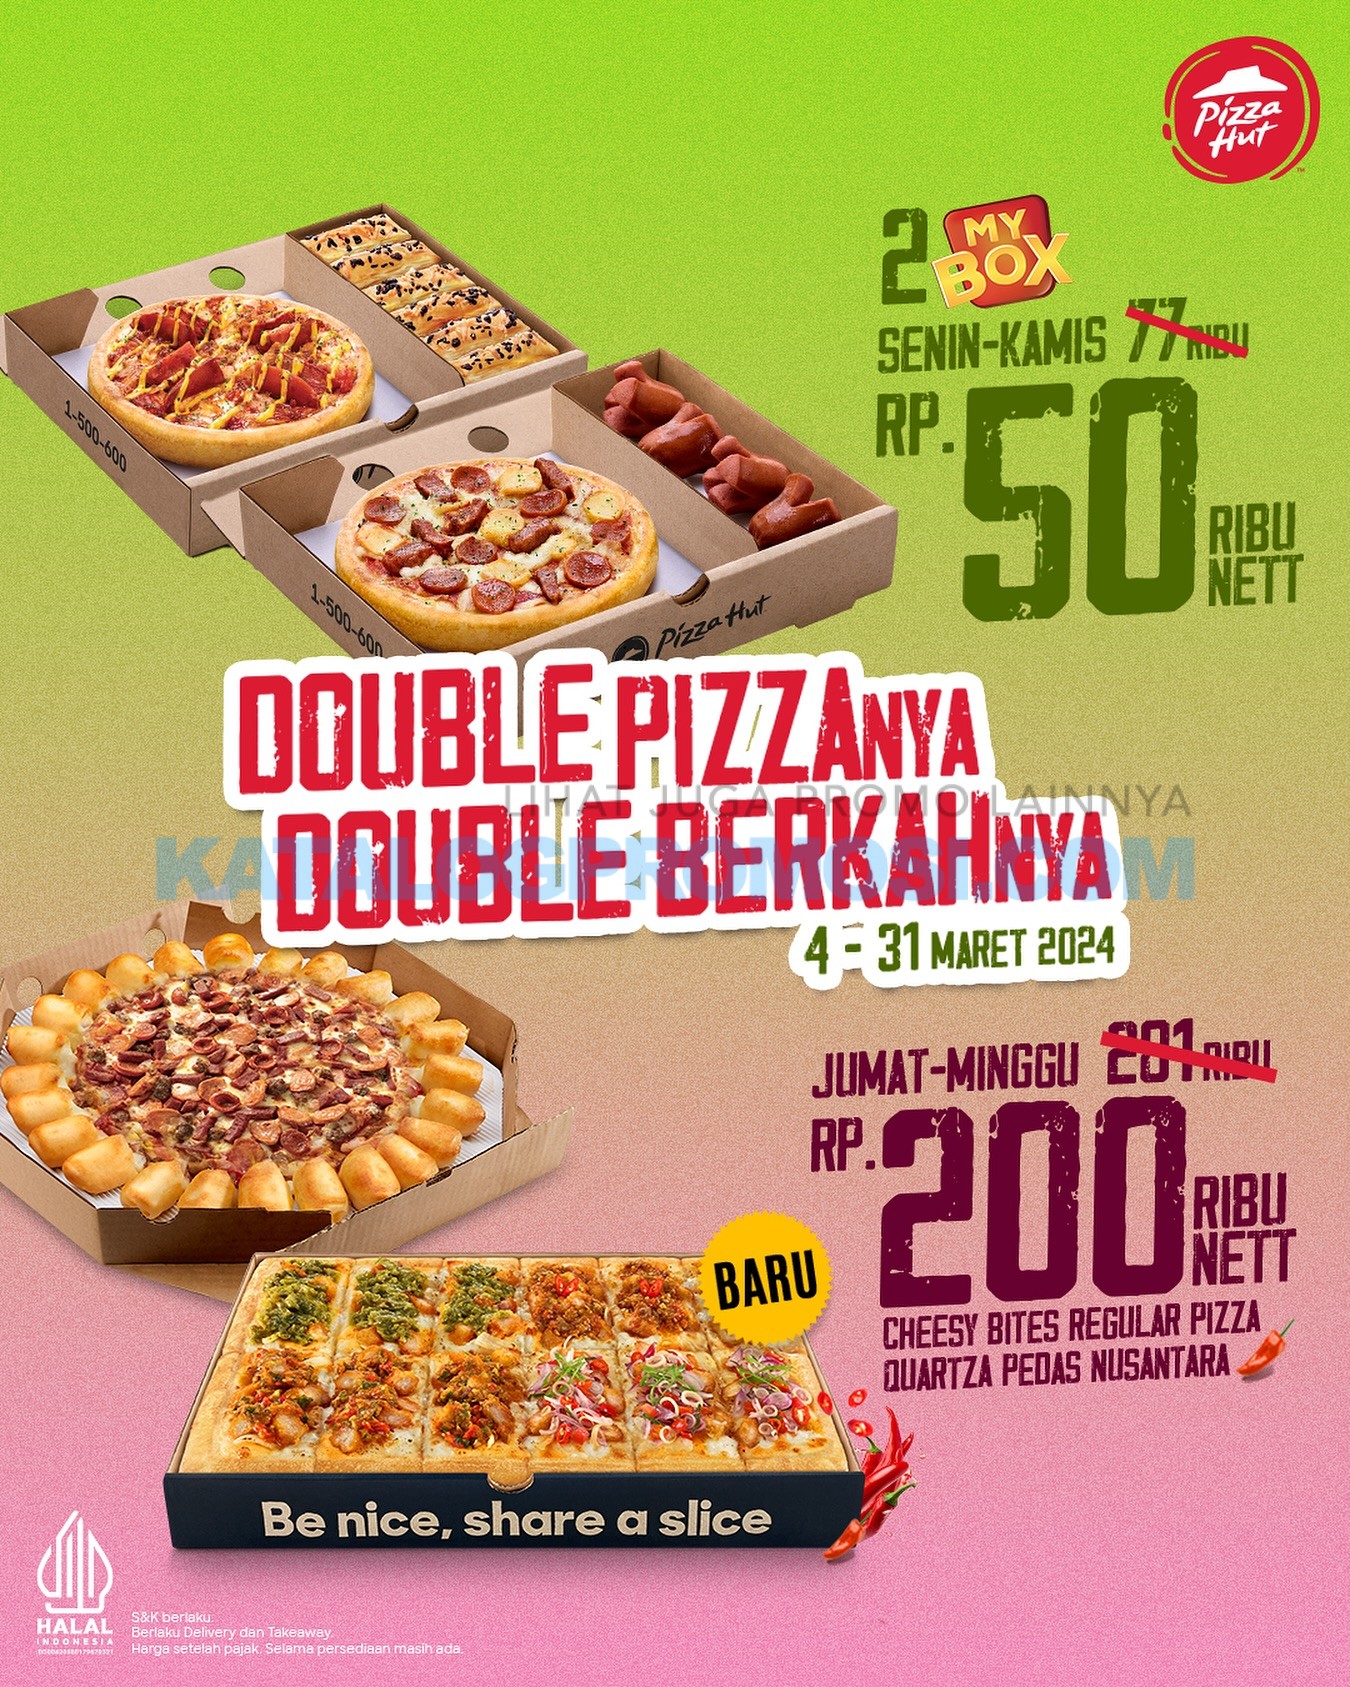 Promo PIZZA HUT DOUBLE PIZZA-NYA DOUBLE BERKAHNYA - CUMA Rp. 50.000 DAPAT 2 PIZZA tersedia mulai tanggal 04-31 Maret 2024